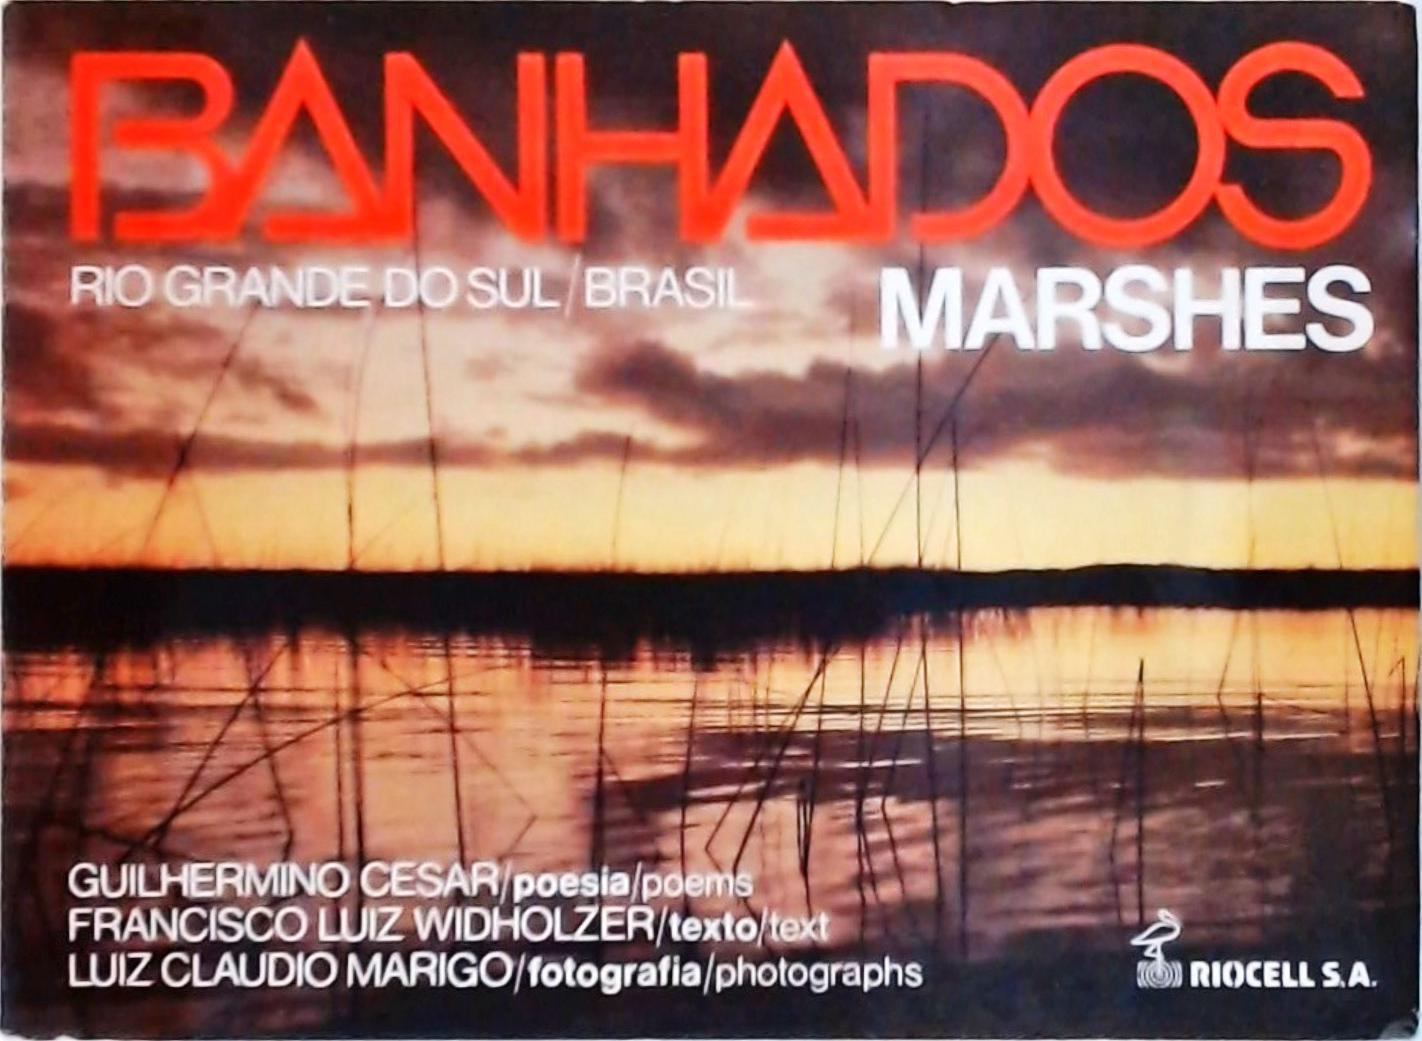 BANHADOS - MARSHES